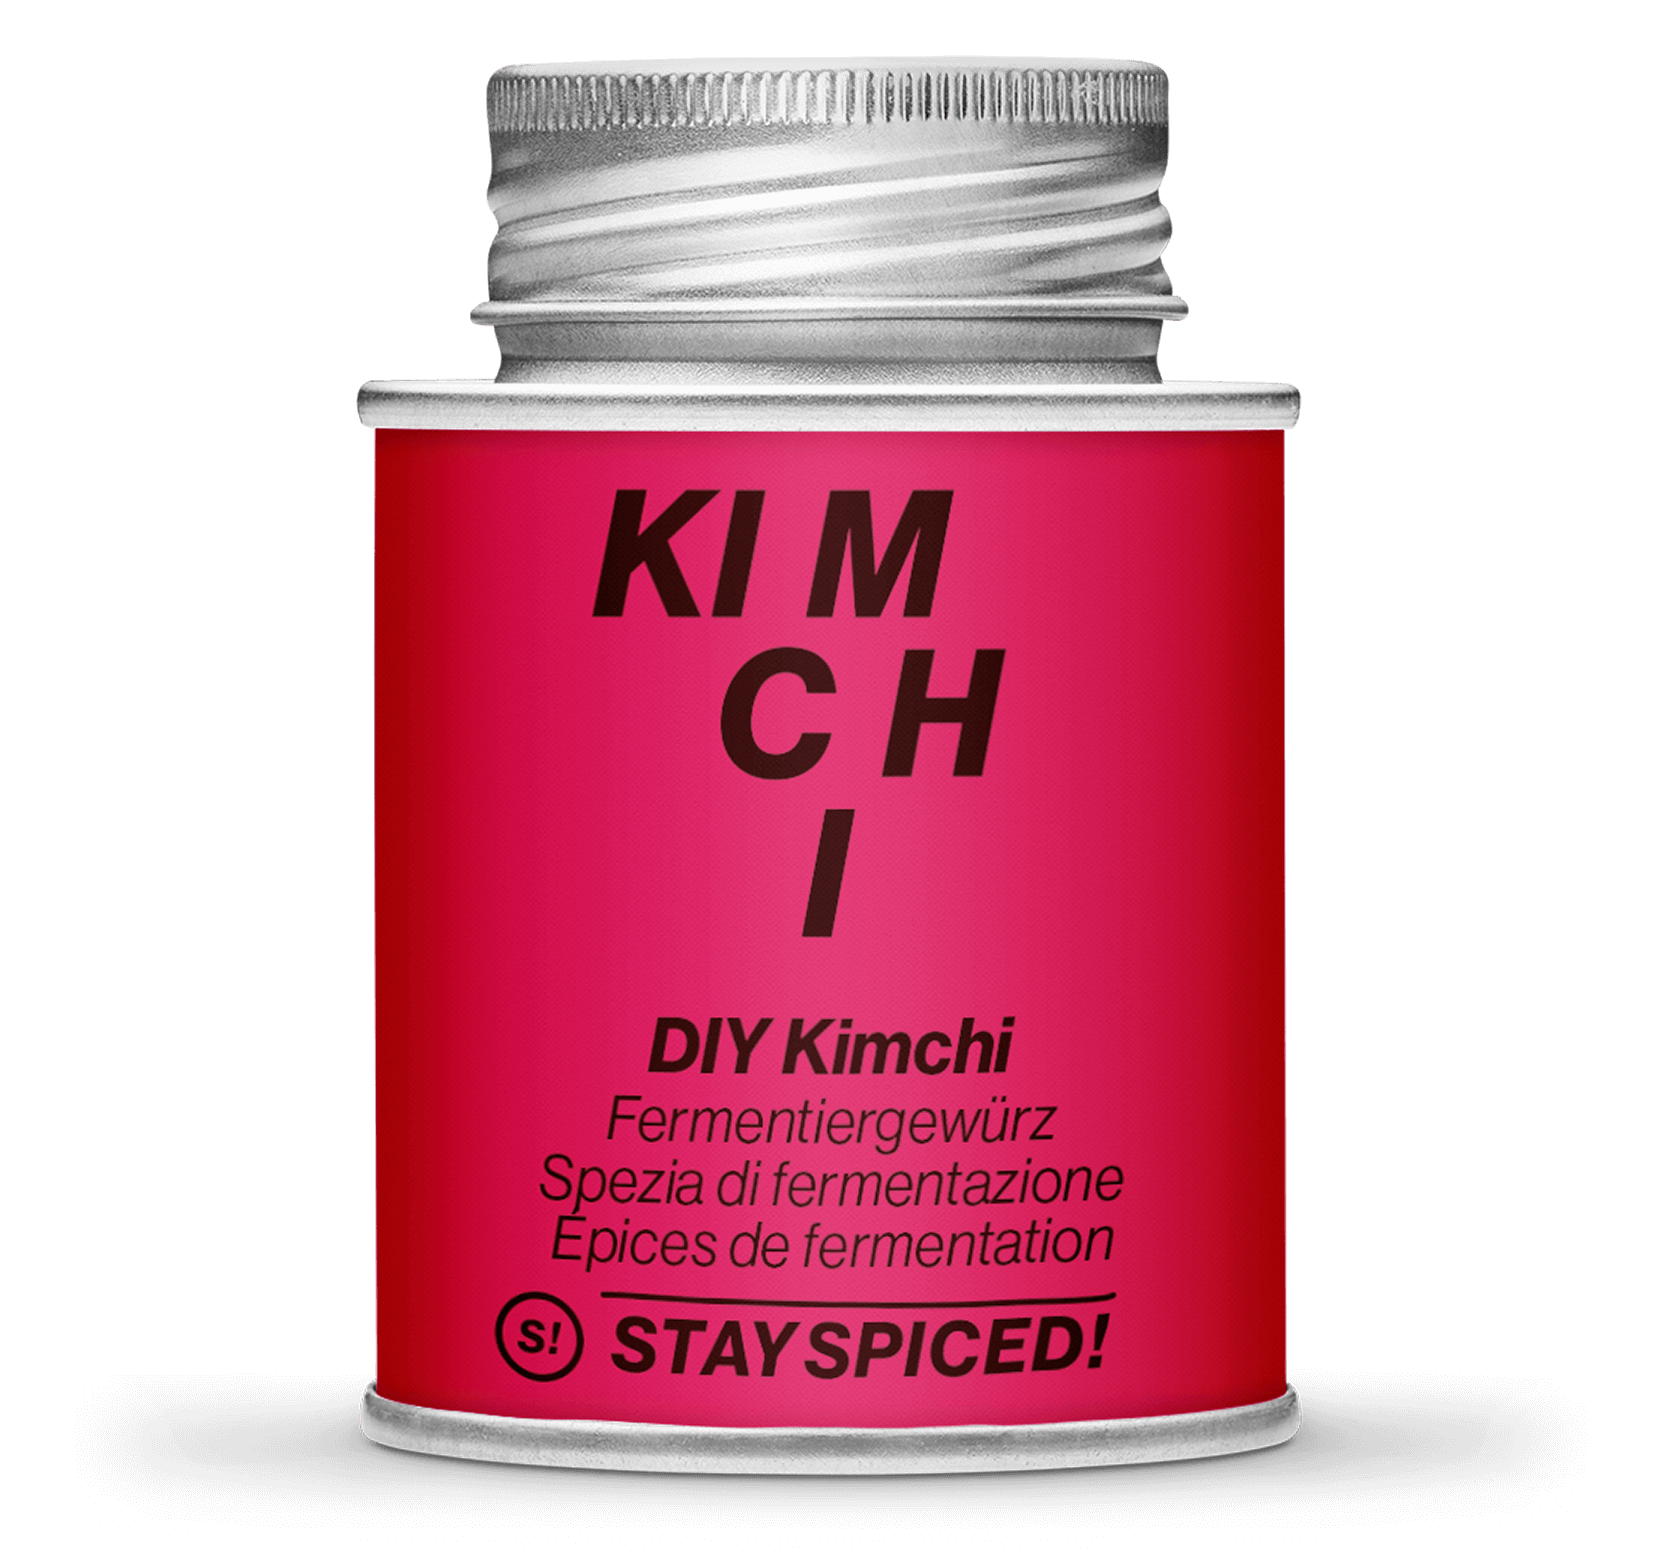 DIY Kimchi Spice Mix, 170ml Schraubdose